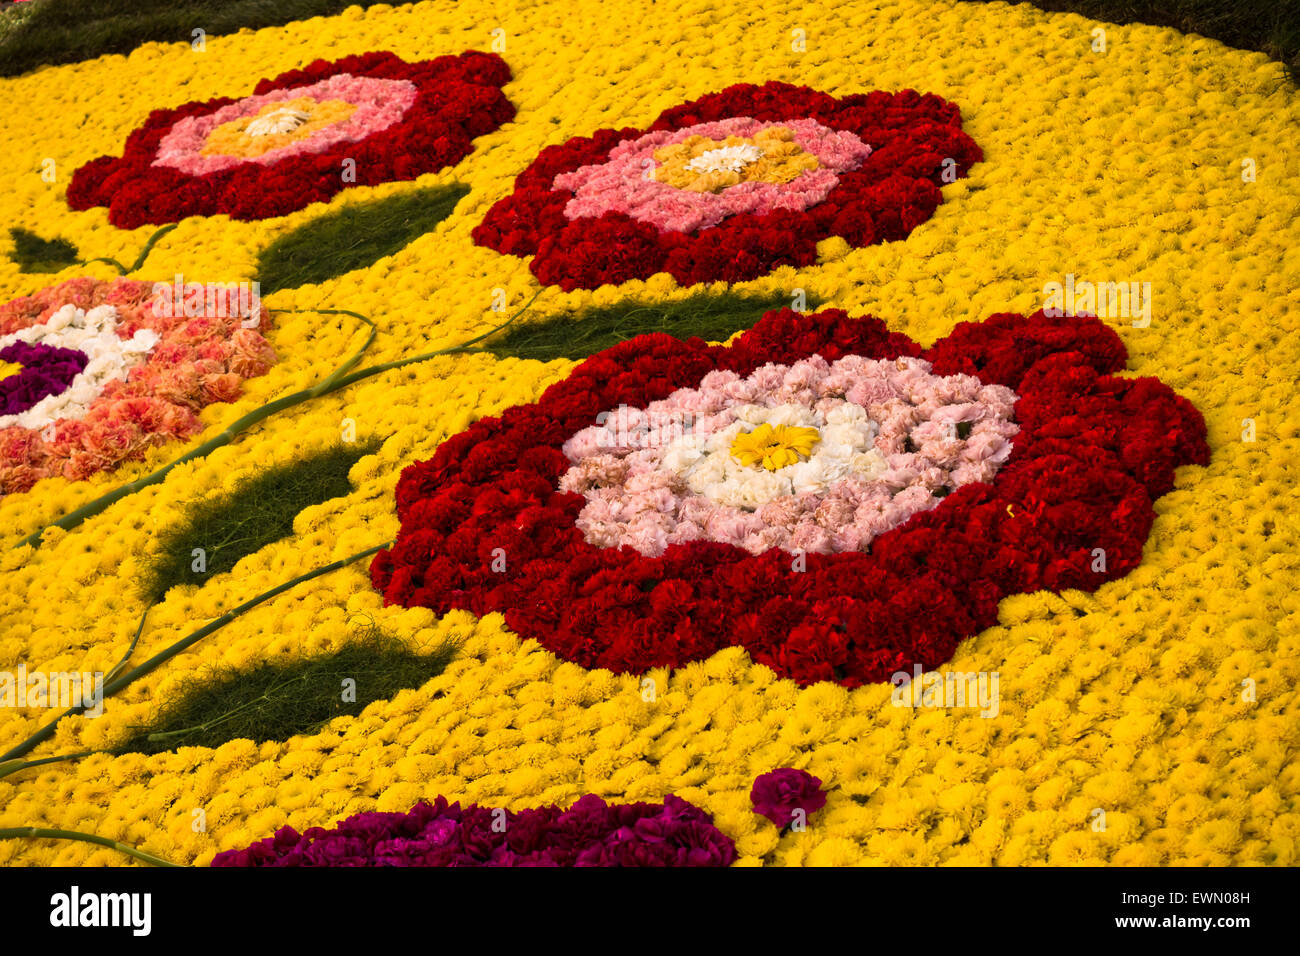 Infiorata fête baroque des images faites de pétales de fleurs, Noto, Sicile Banque D'Images